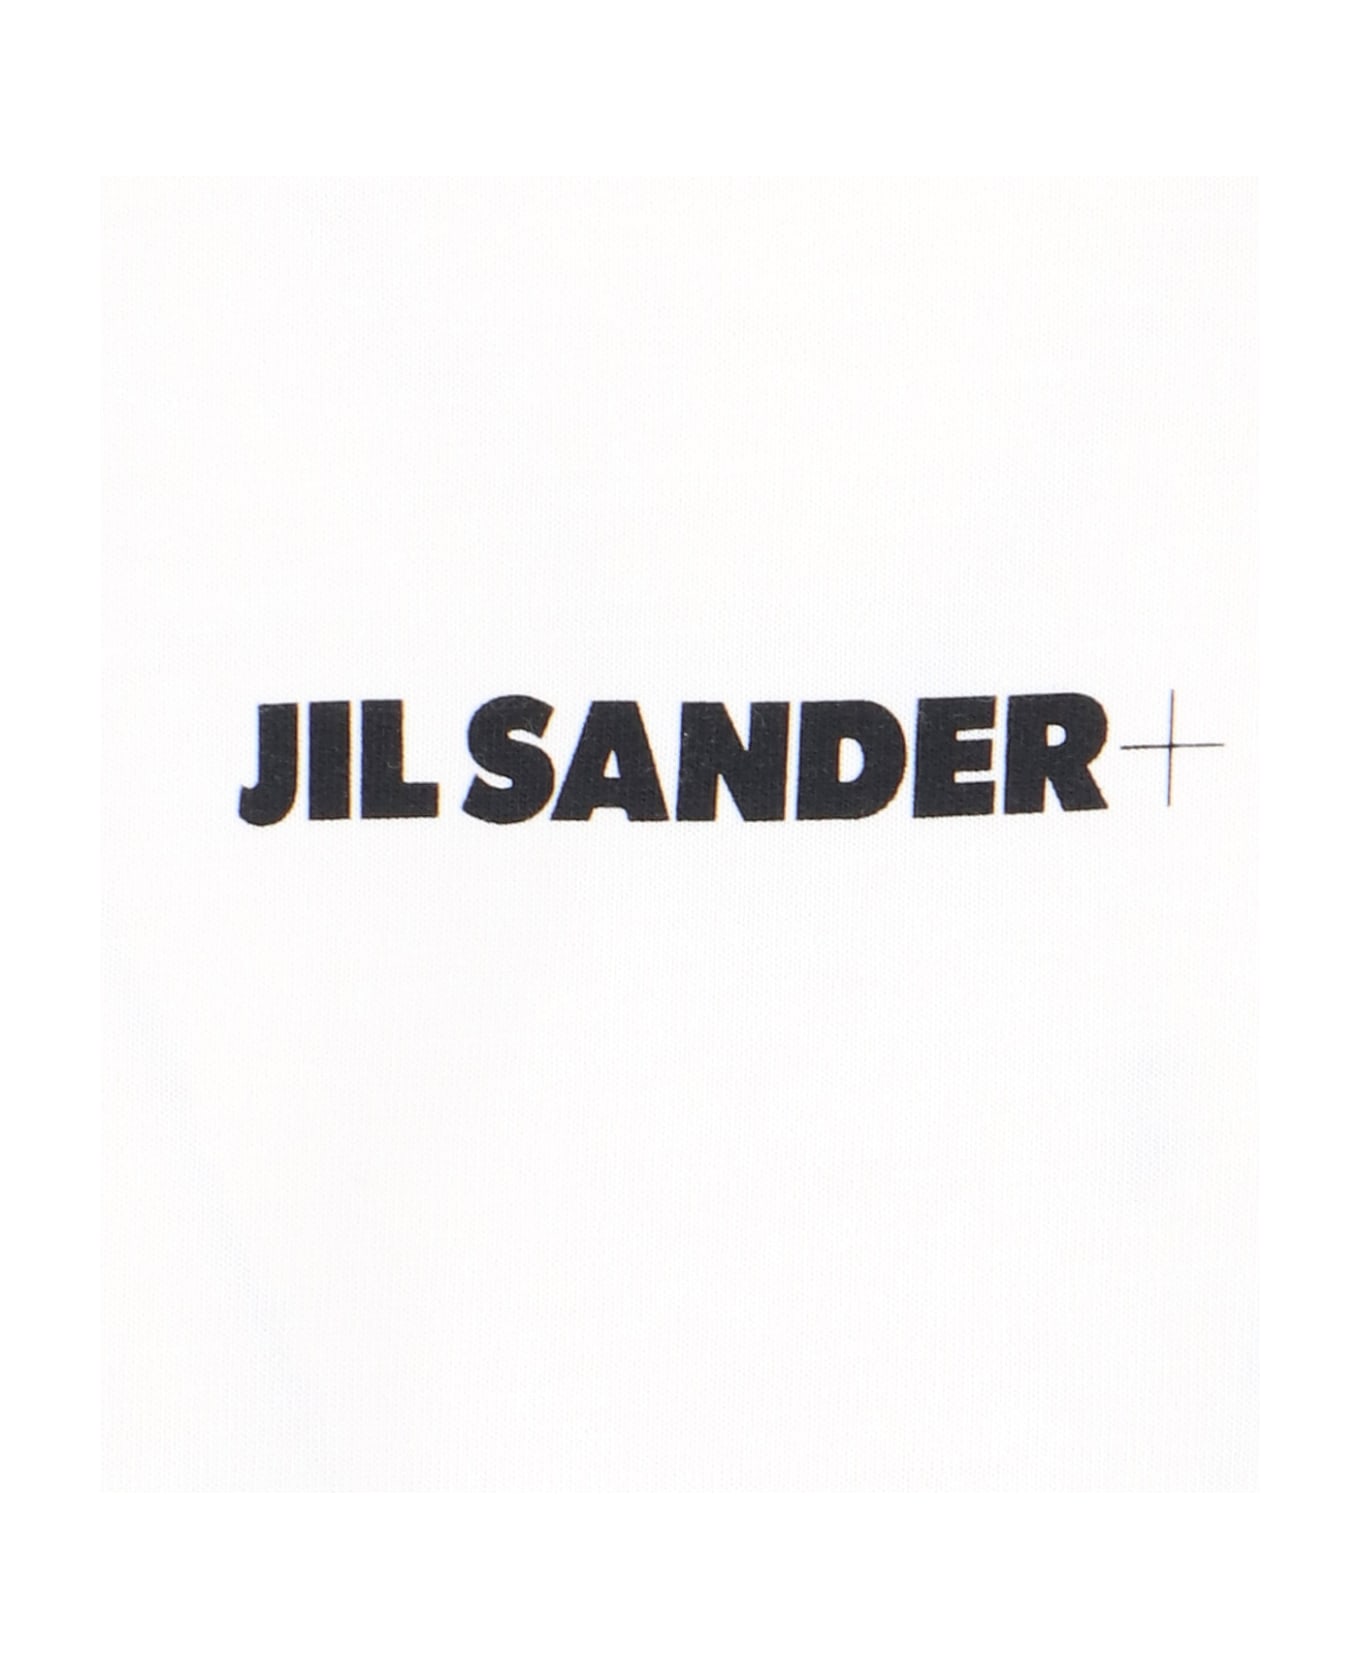 Jil Sander Logo T-shirt - White